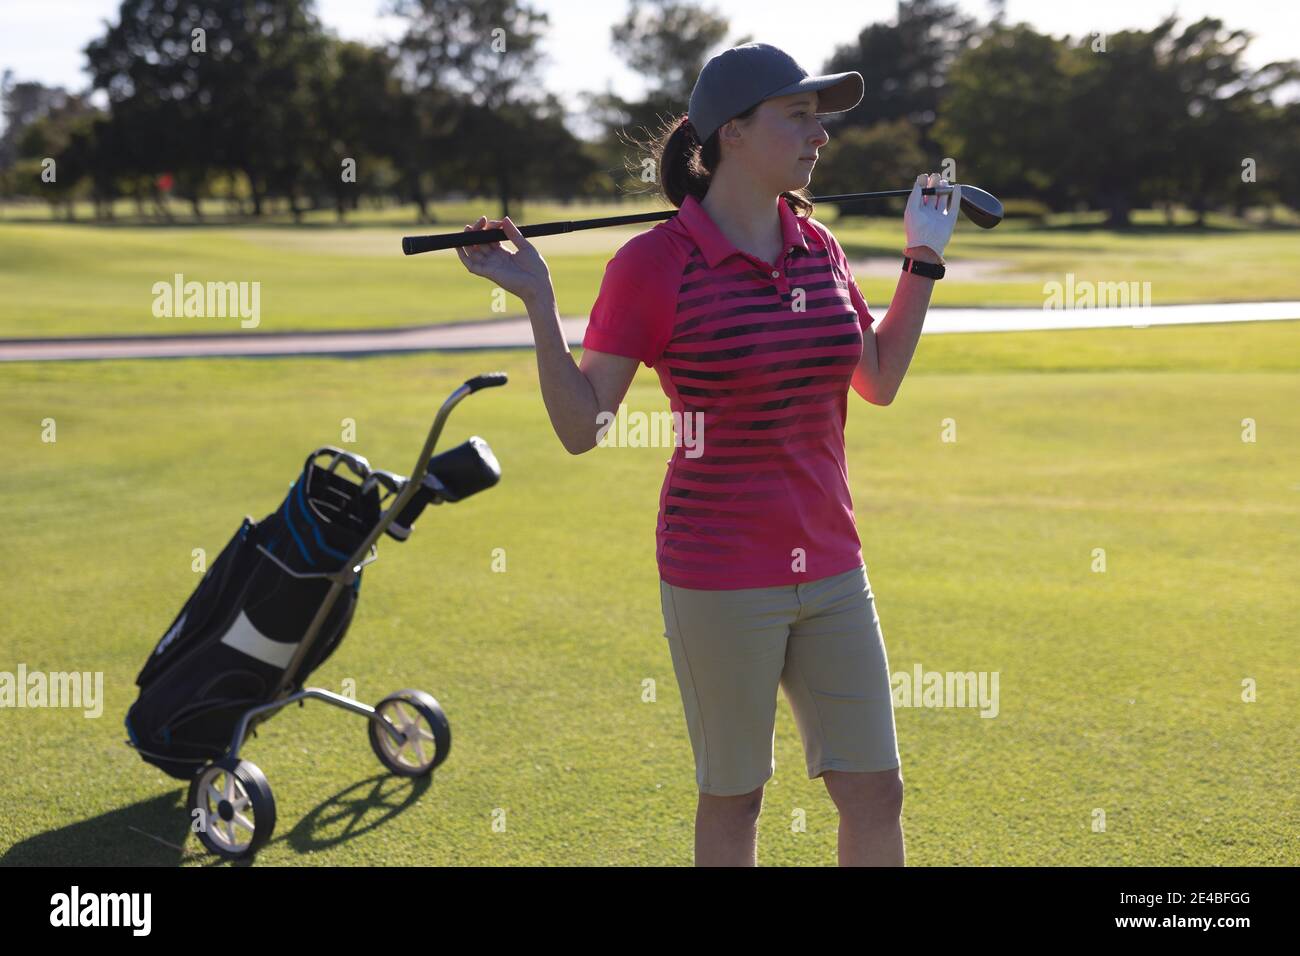 Kaukasische Frau, die auf dem Golfplatz steht und Golfschläger hält Schultern Stockfoto